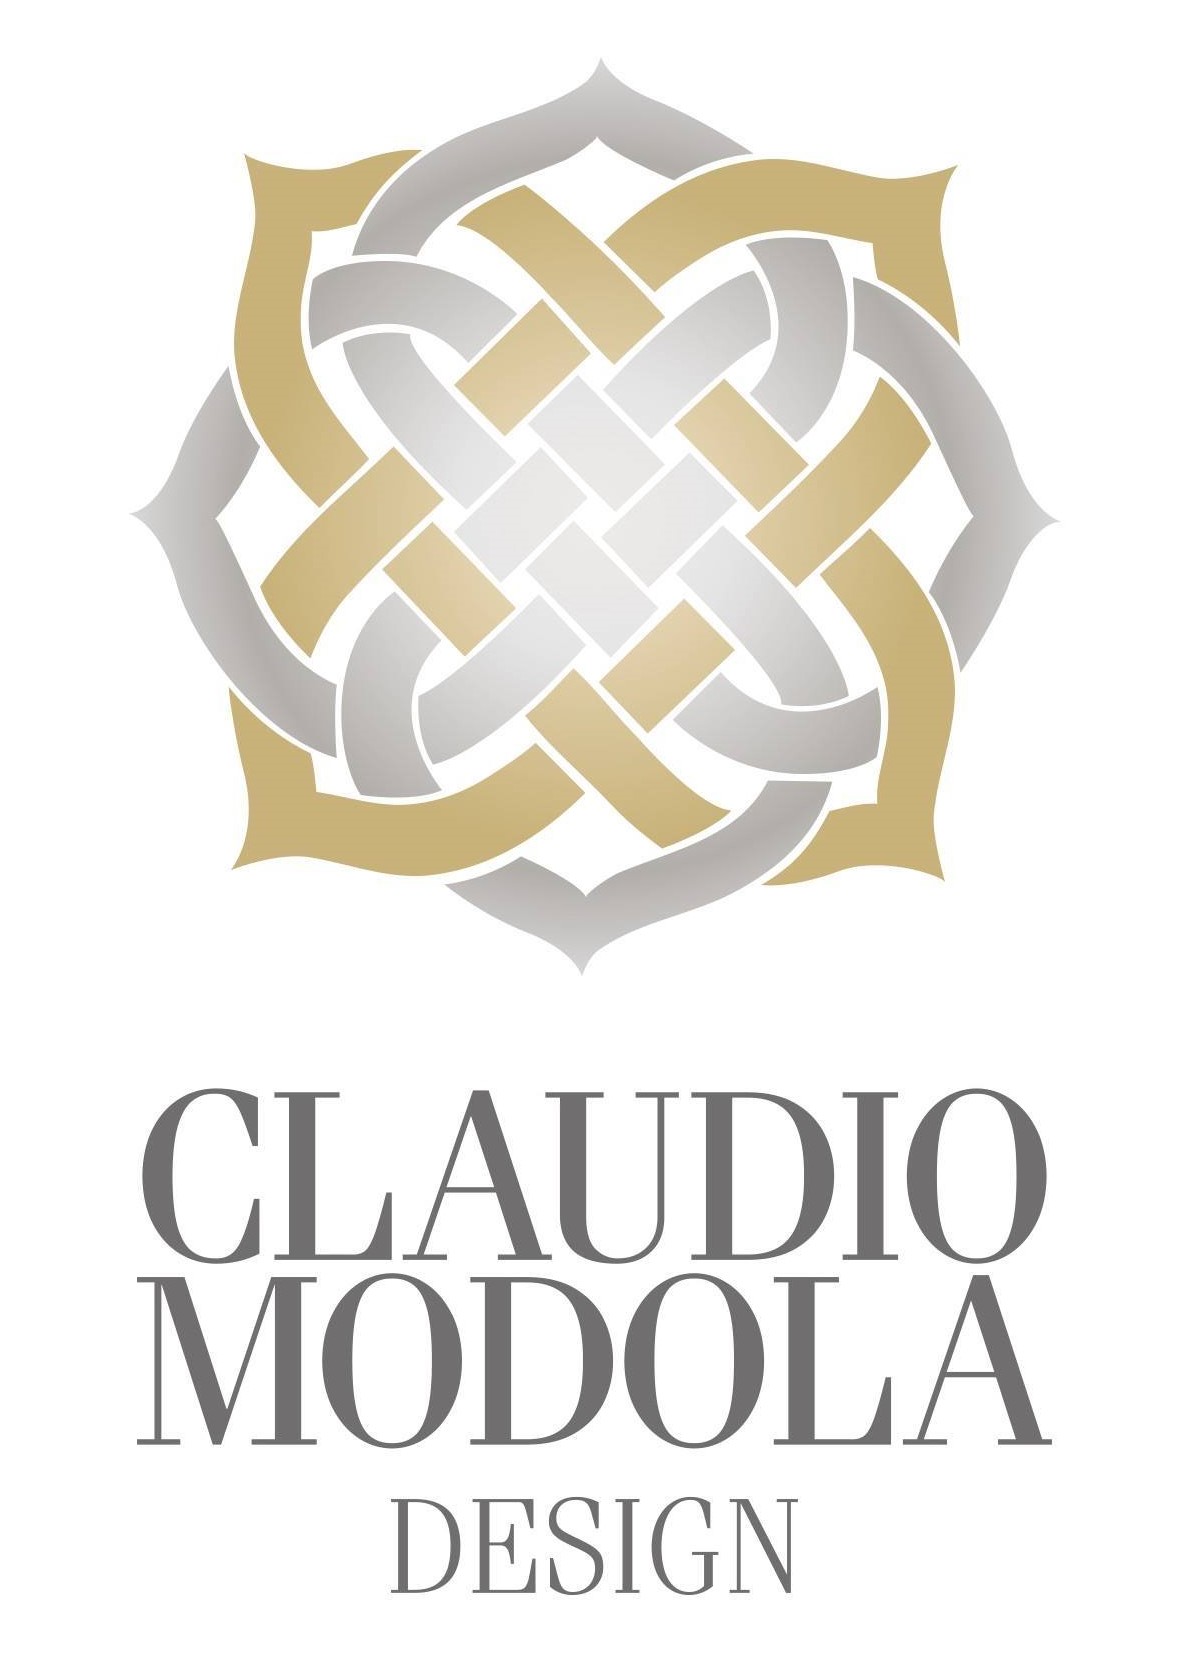 Claudio Modola Design - logo